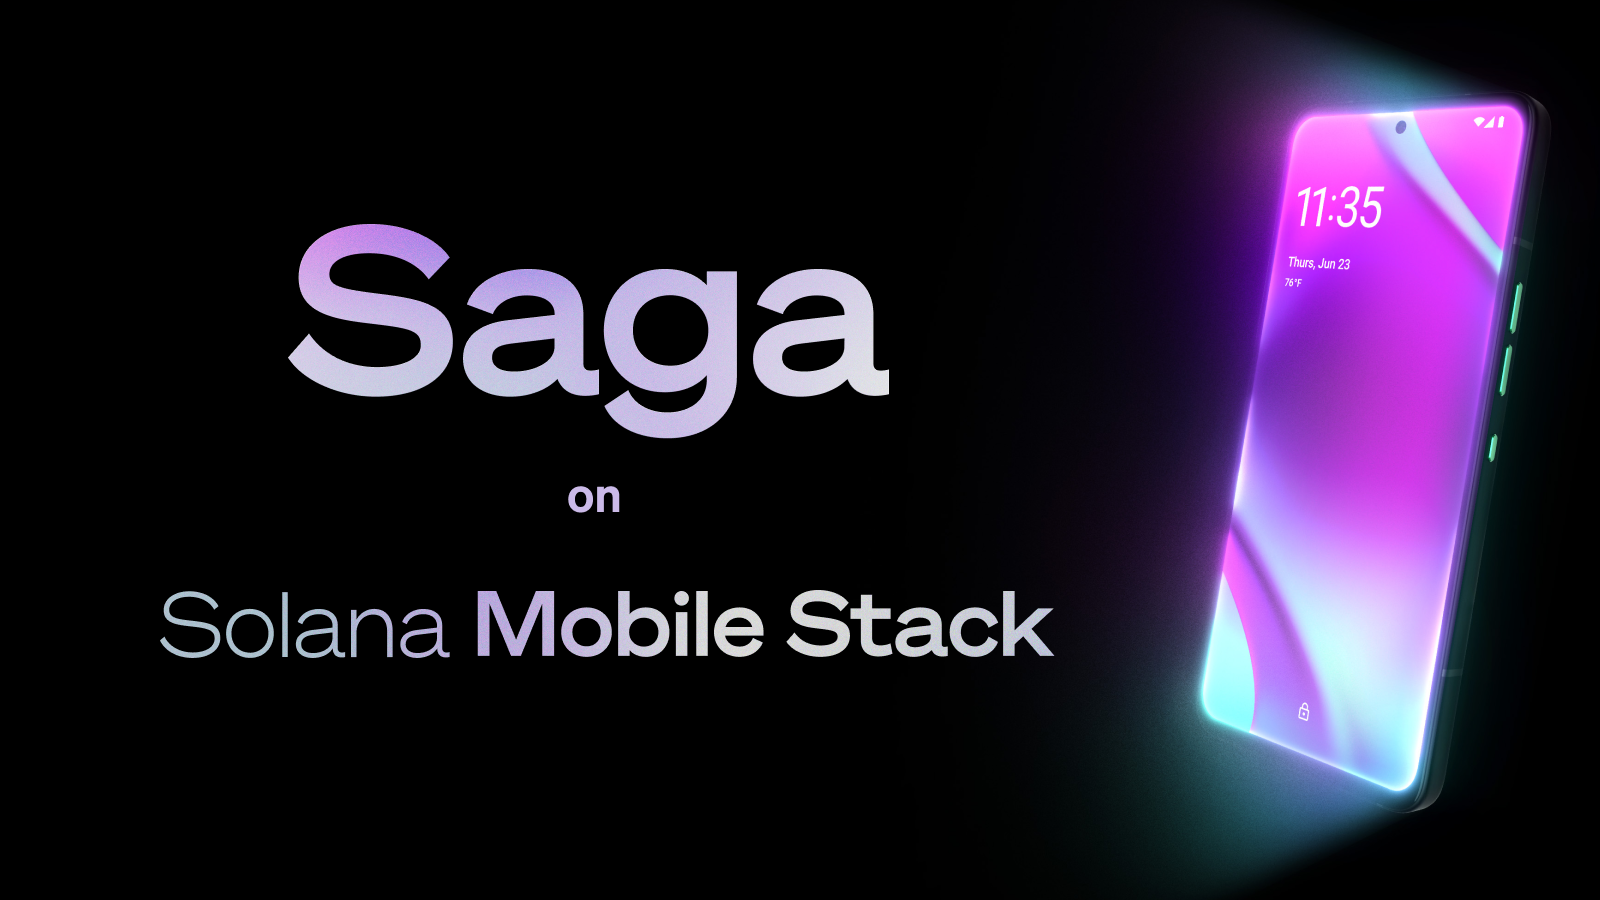 saga solana mobile stack hero - Thăng trầm của Solana: Từ “Ethereum Killer” đến “không ai quan tâm” – Liệu sẽ đi về đâu?